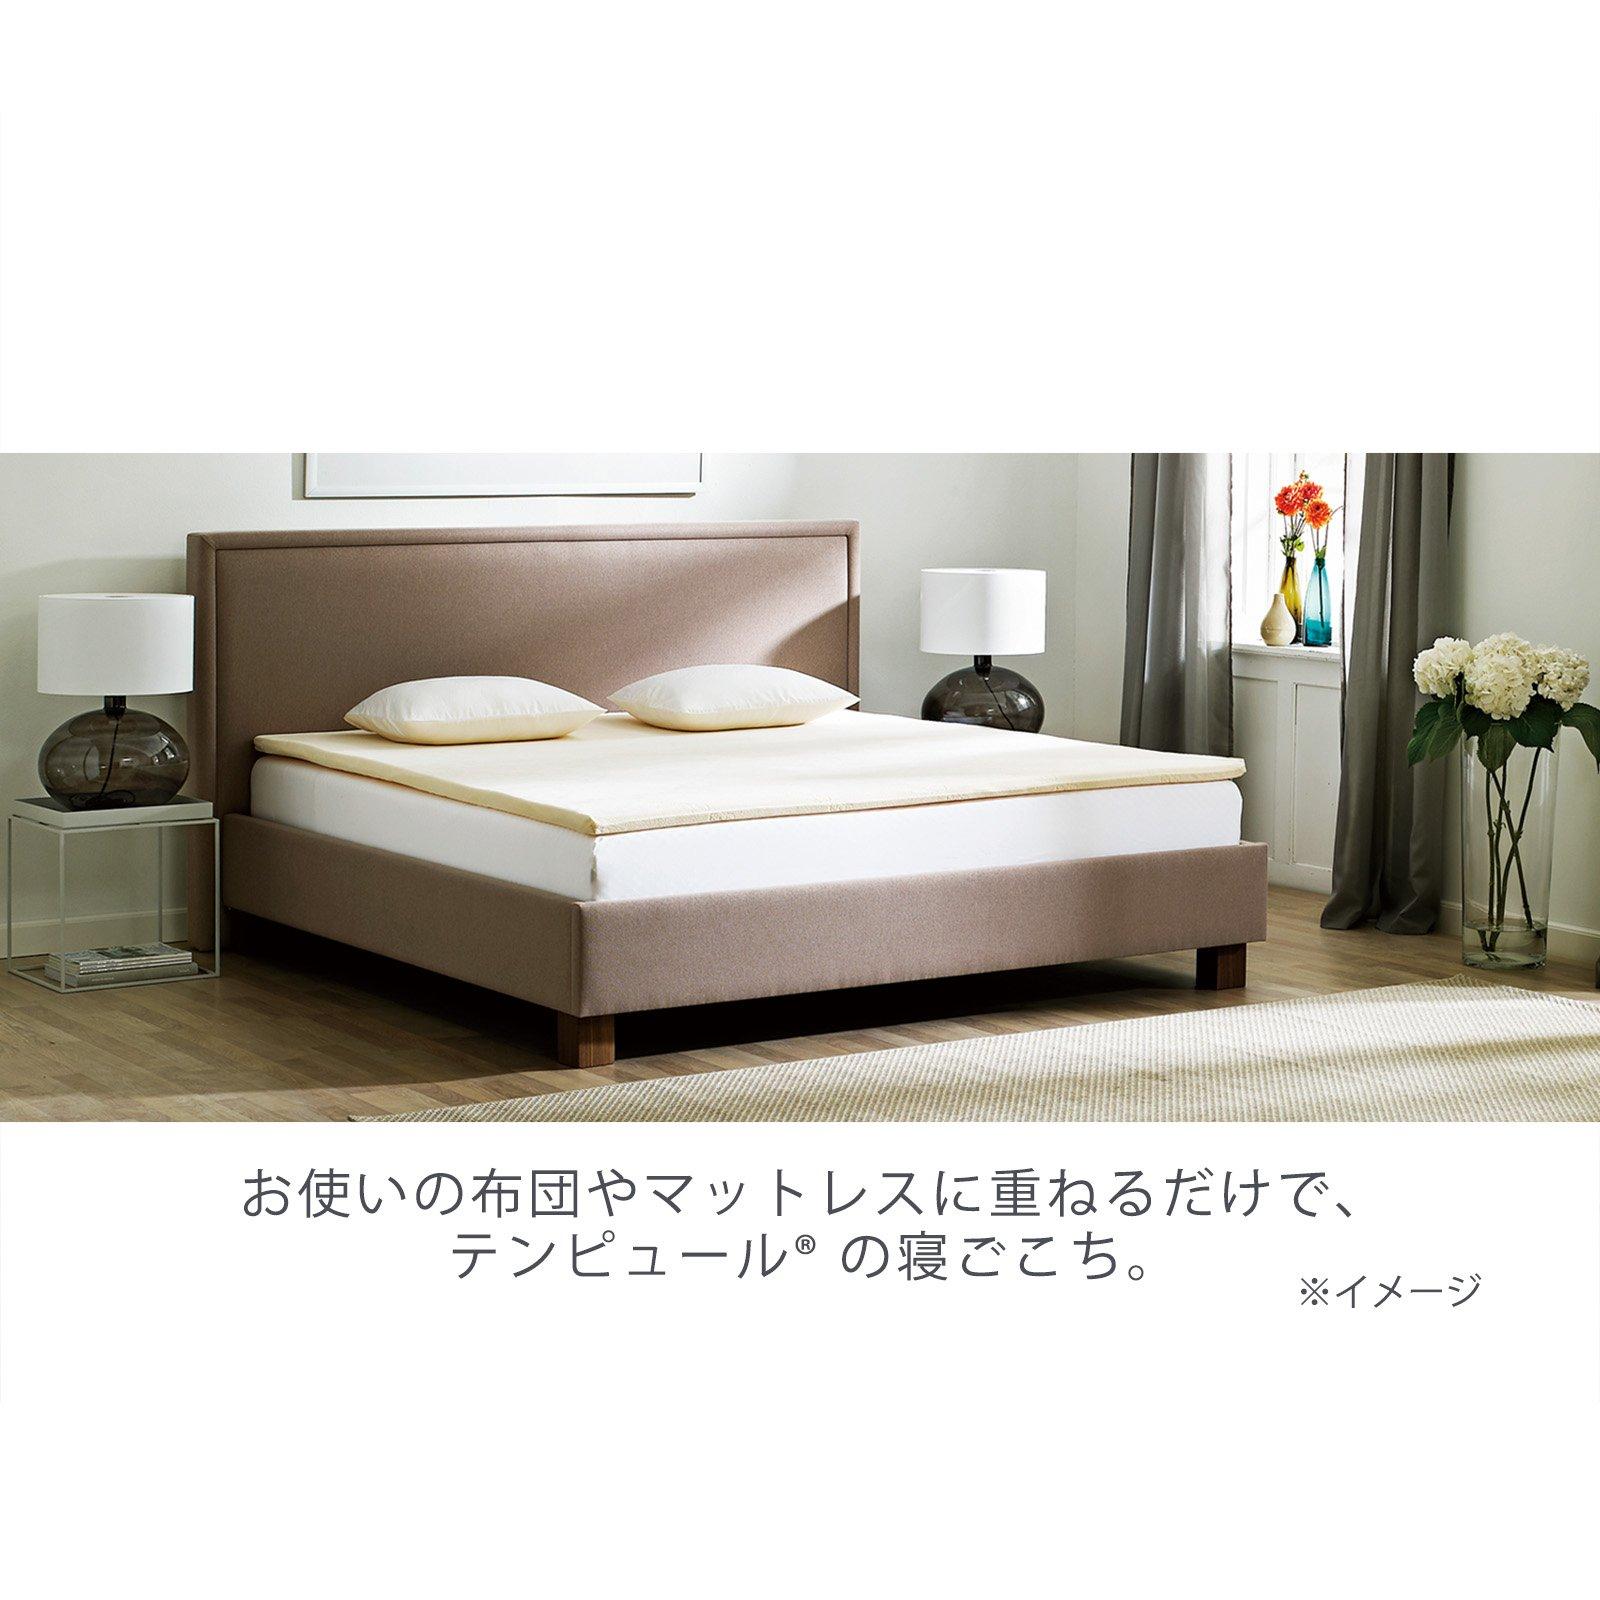 テンピュール マットレス トッパー 3.5cm シングルサイズ - 寝具